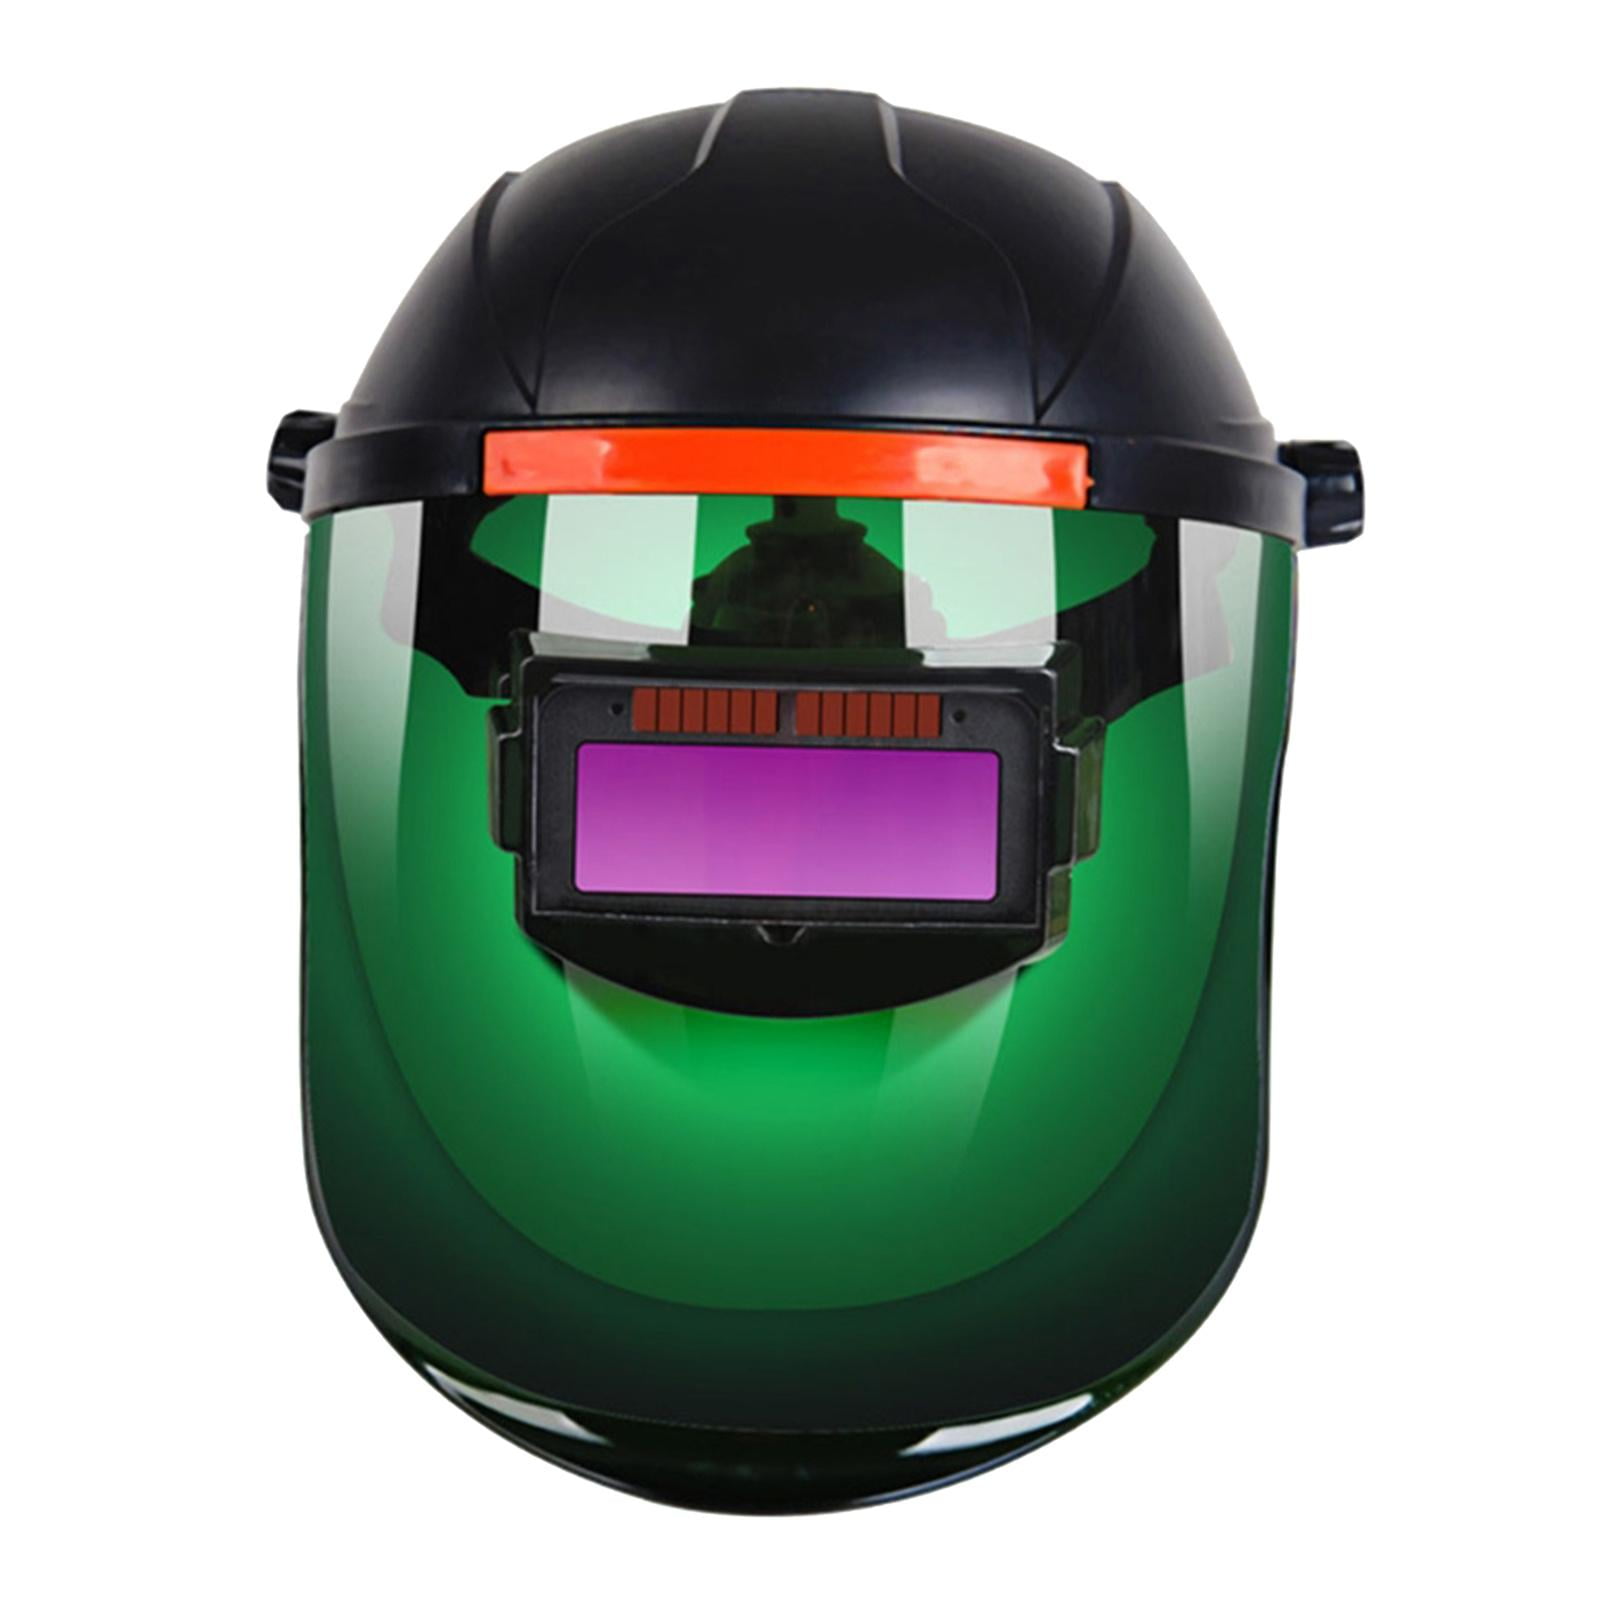 Auto Darkening Welding Helmet Lens Protective Mask Gear Equipment For Welders 